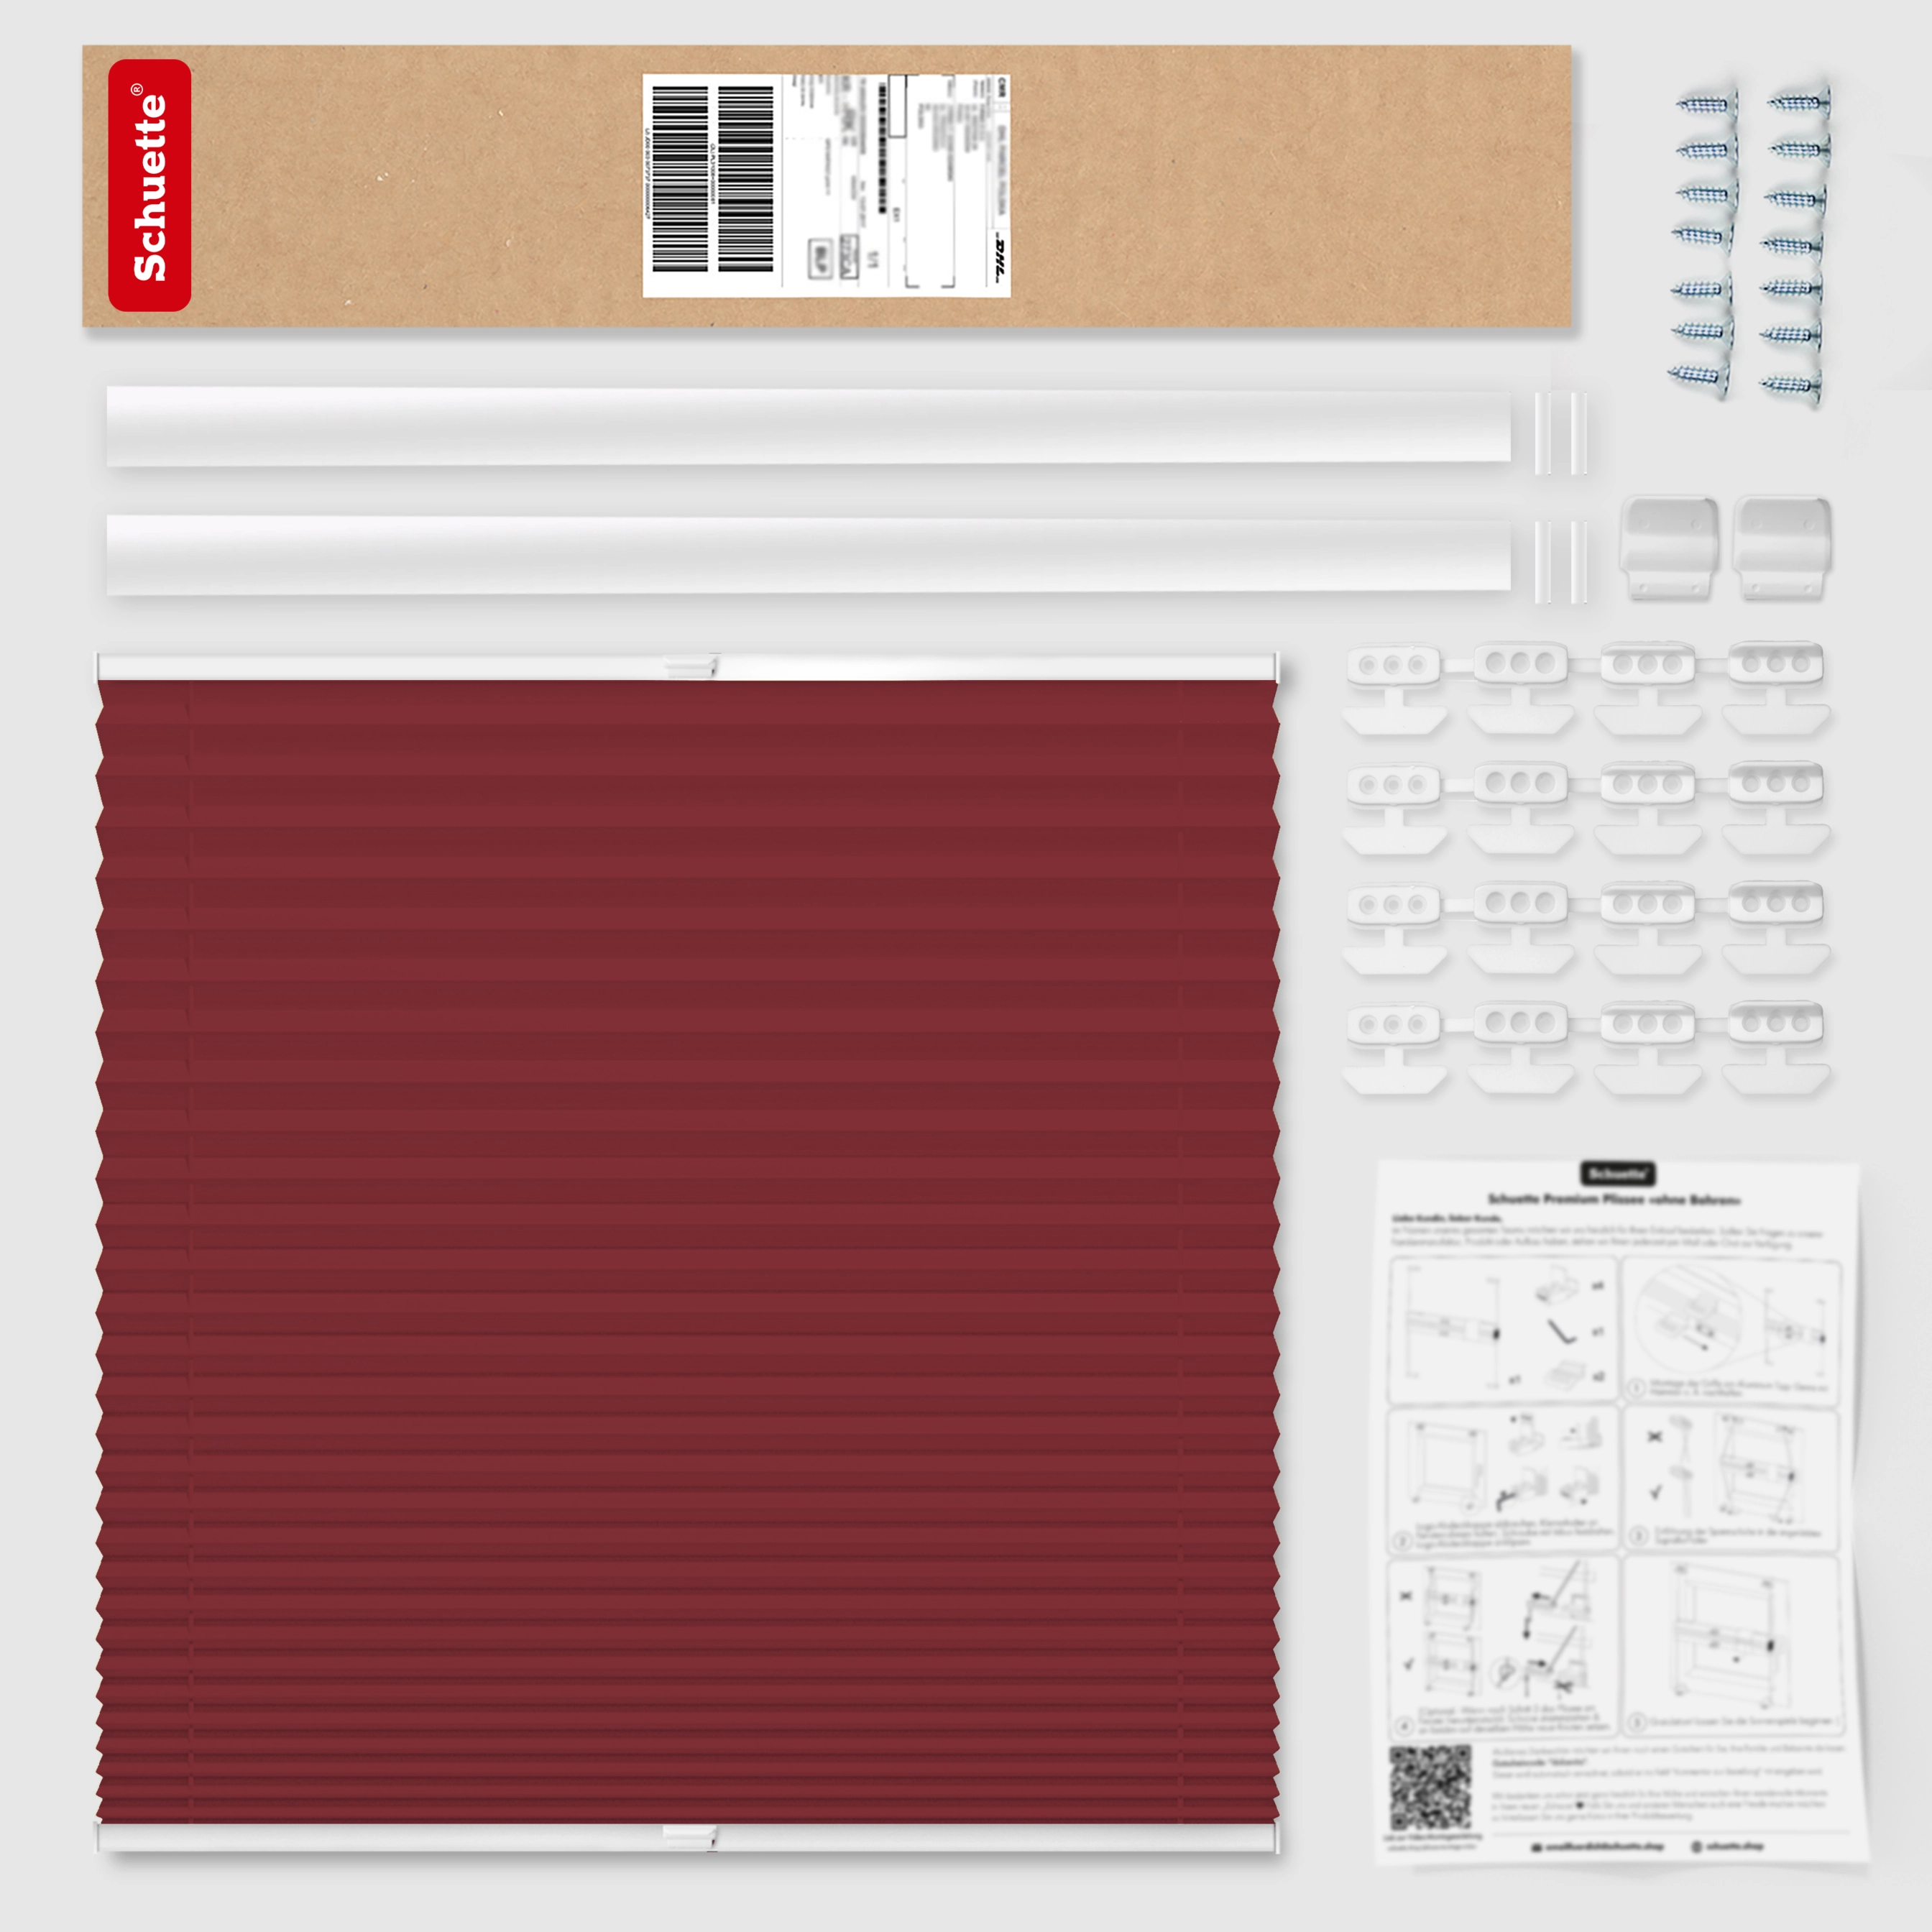 Schuette® Dachfenster Plissee nach Maß • Thermo Kollektion: Scarlet Wine (Rot) • Profilfarbe: Weiß